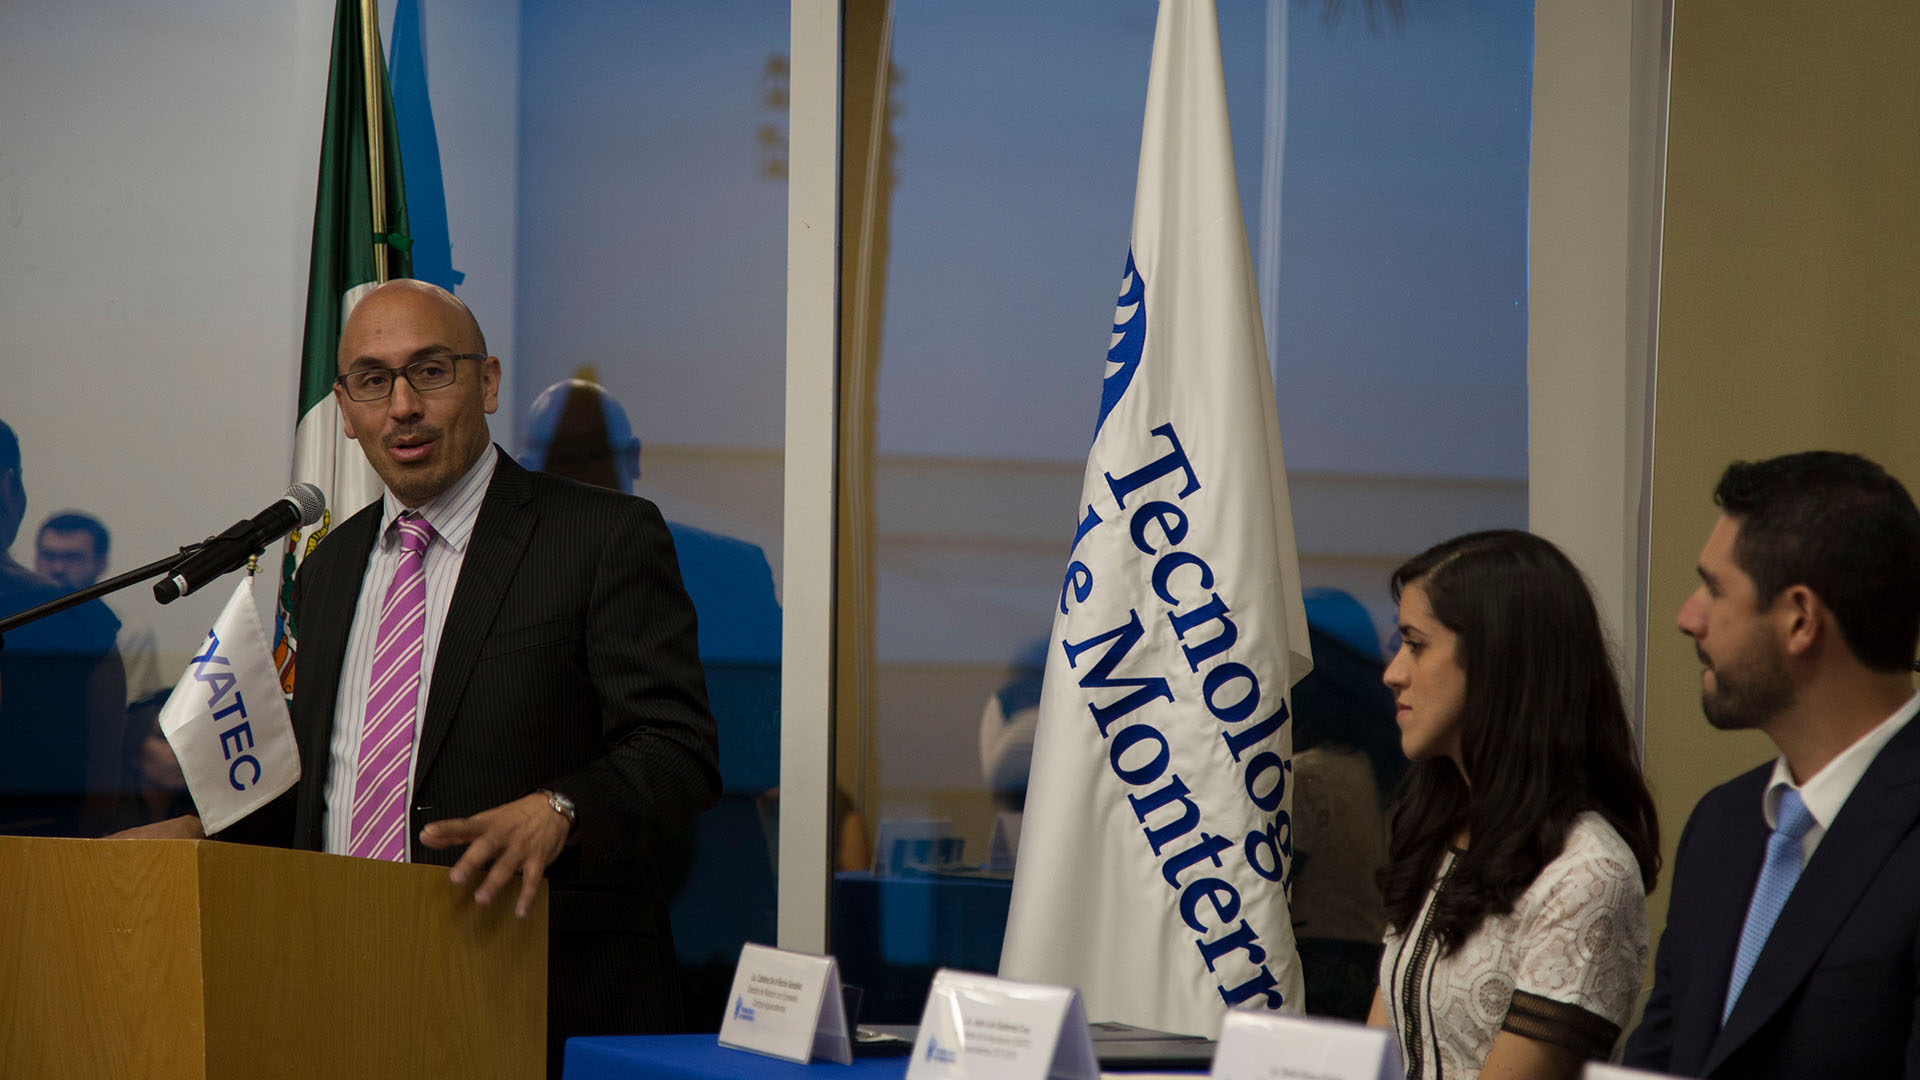 Lic. Emilio Álvarez Frangie, Director Nacional de Vinculación con Asociaciones y Clubes EXATEC